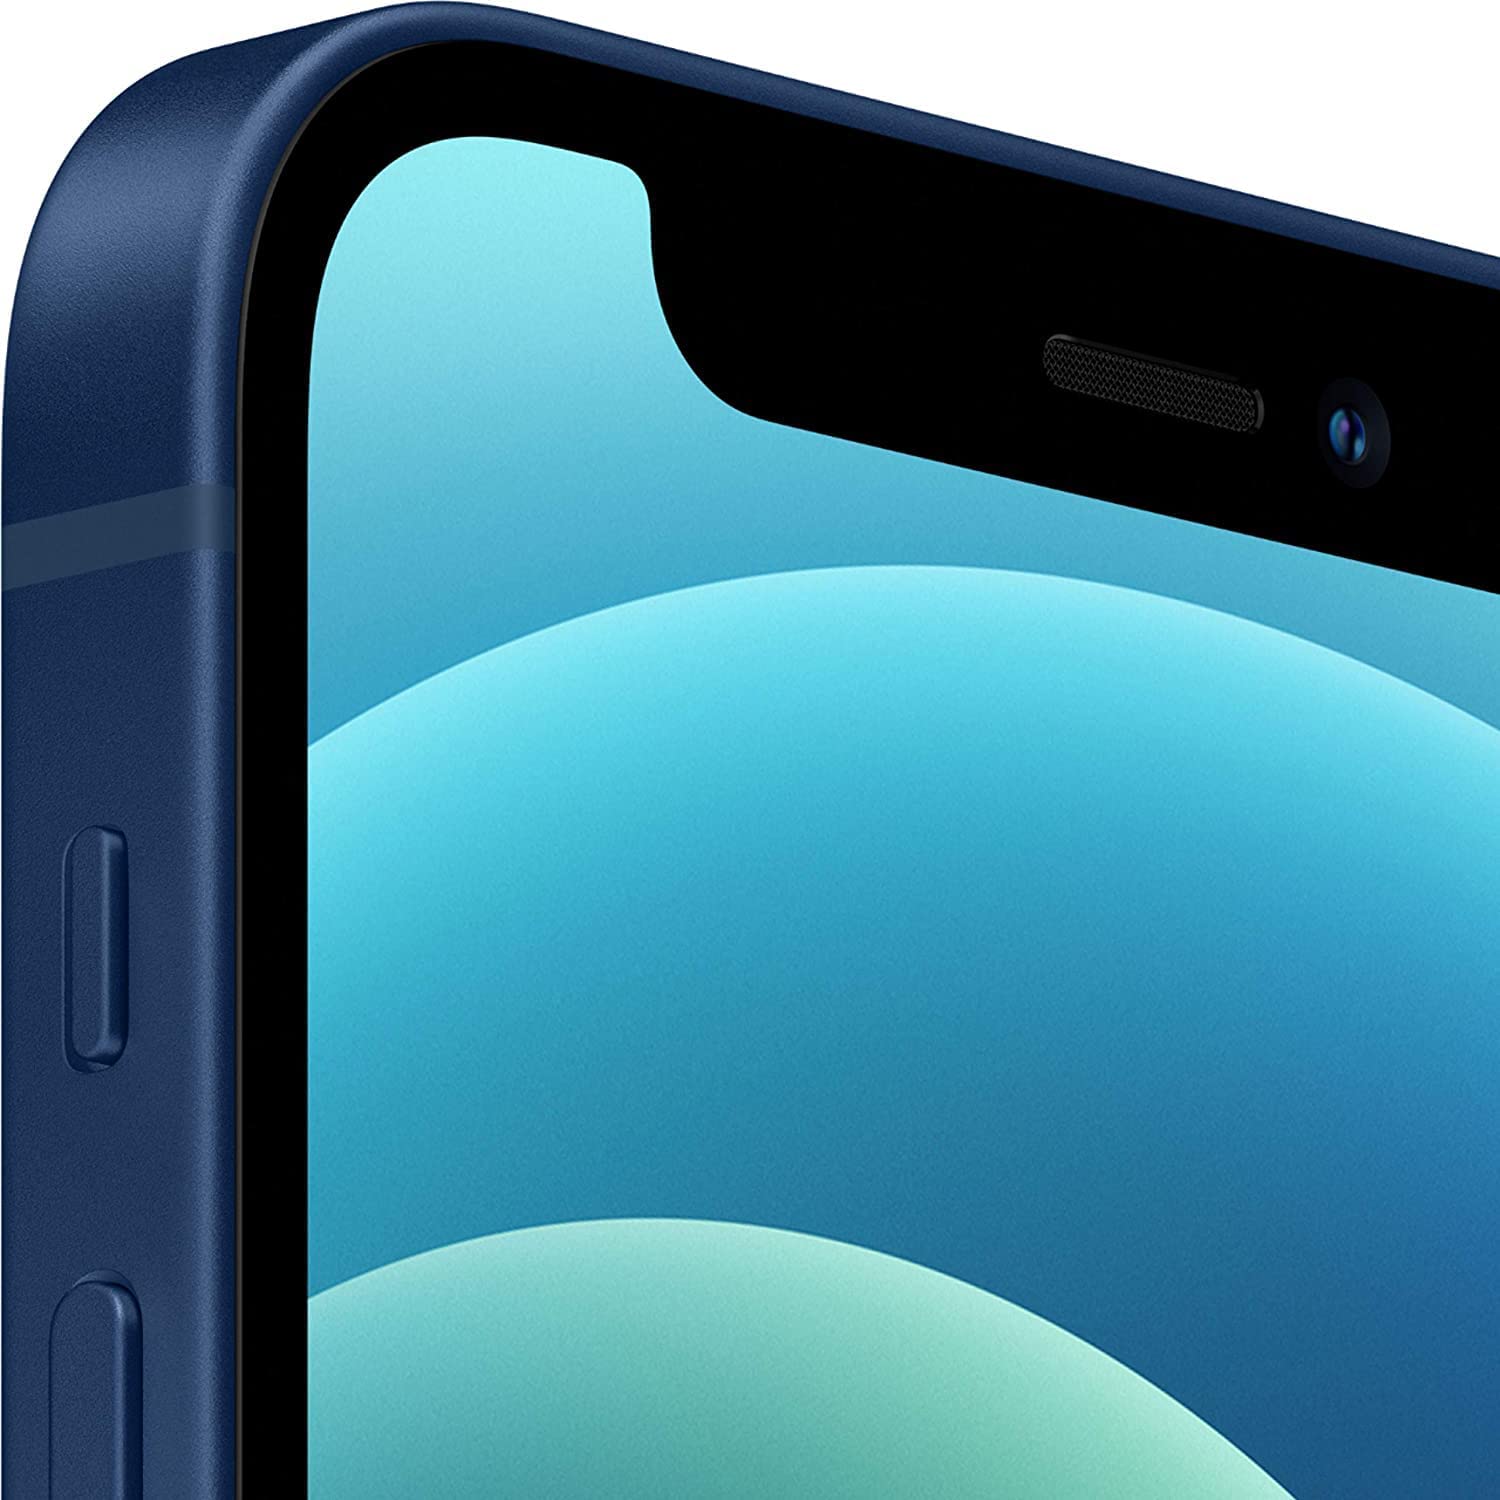 Apple iPhone 12 Mini, 64GB, Blue - Unlocked (Renewed)